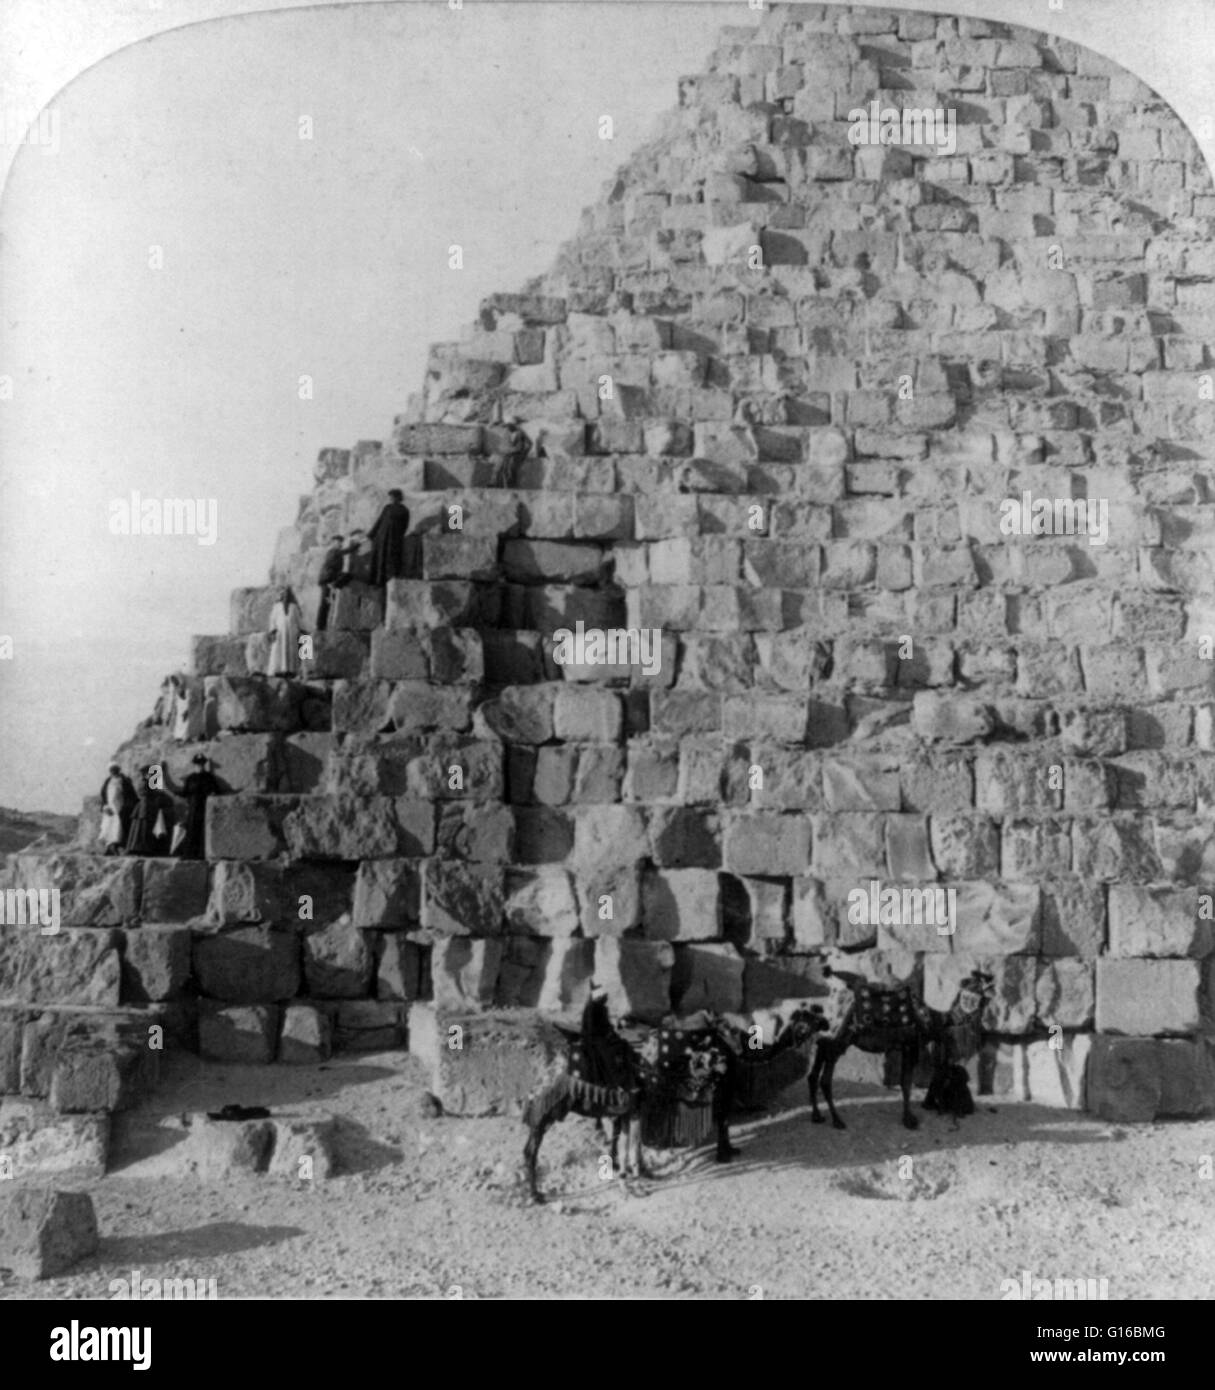 Titel: "Klettern die Cheops-Pyramide, Ägypten". Die Cheops-Pyramide ist die älteste und größte der drei Pyramiden in Gizeh Nekropole am Rande, was jetzt ist El Giza, Ägypten. Es ist die älteste der sieben Weltwunder der antiken Welt und die einzige Stockfoto